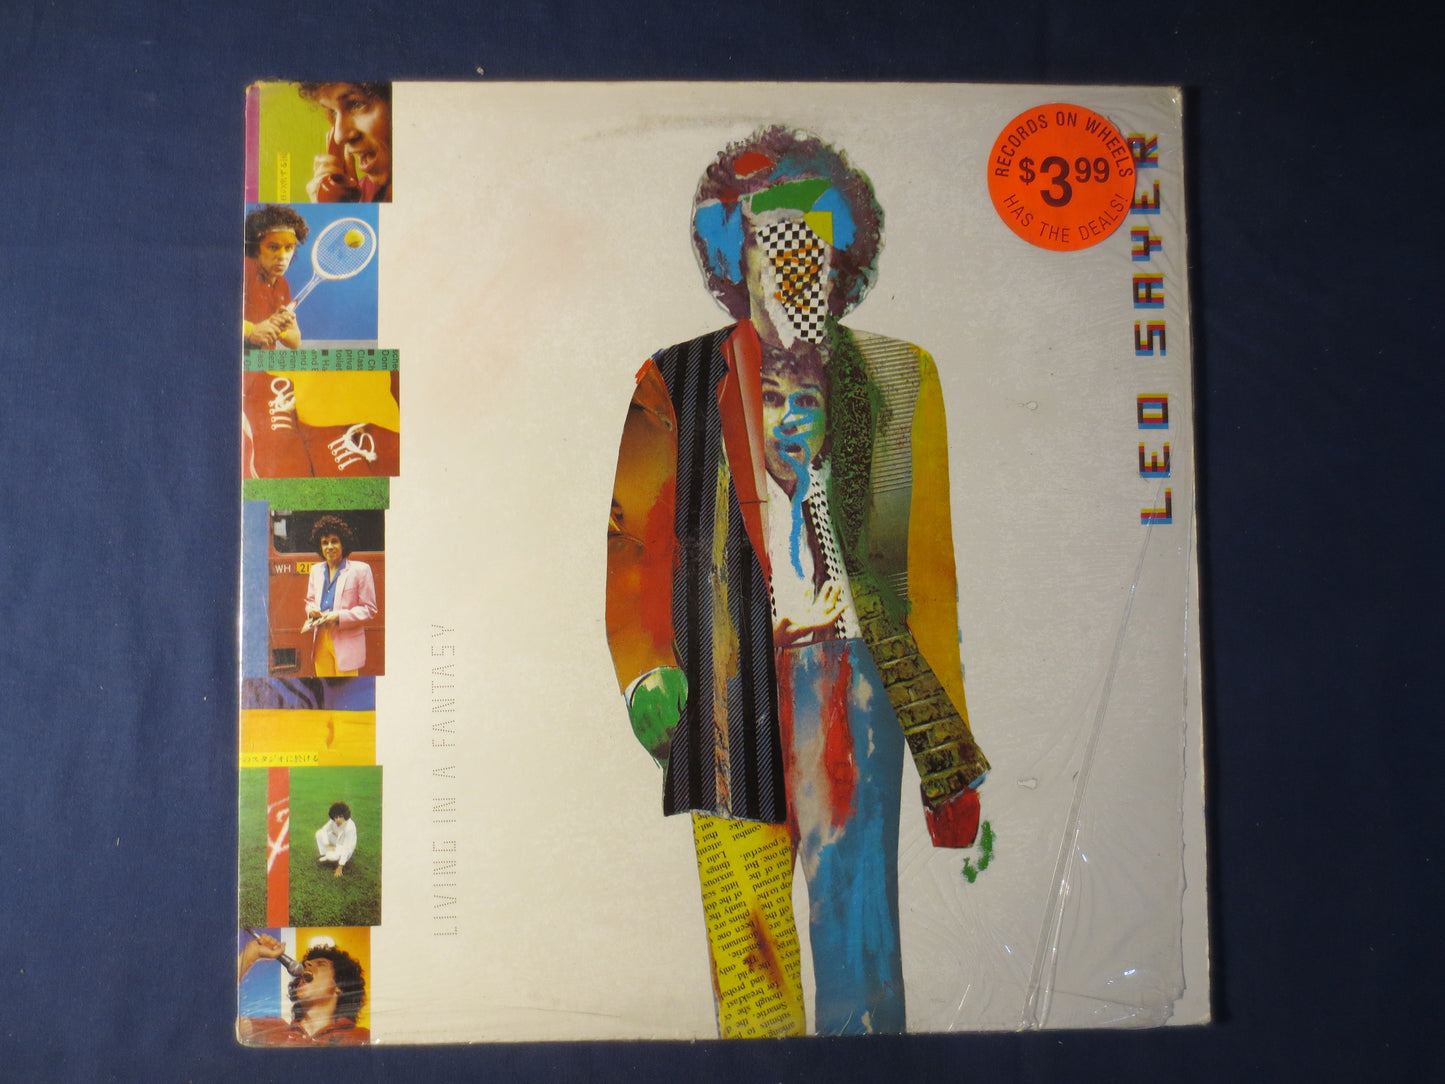 LEO SAYER, Living In A FANTASY, Leo Sayer Record, Leo Sayer Album, Leo Sayer Lp, Pop Record, Vinyl Lp, Lps, 1980 Records